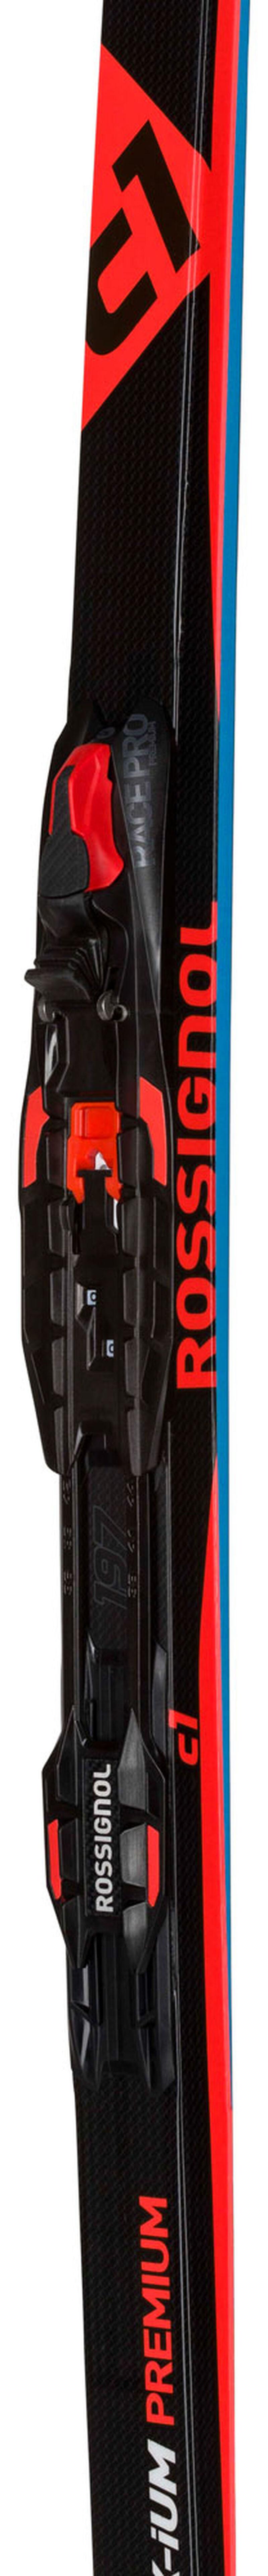 Unisex Nordic Racing Skis X-Ium Classic Premium C1